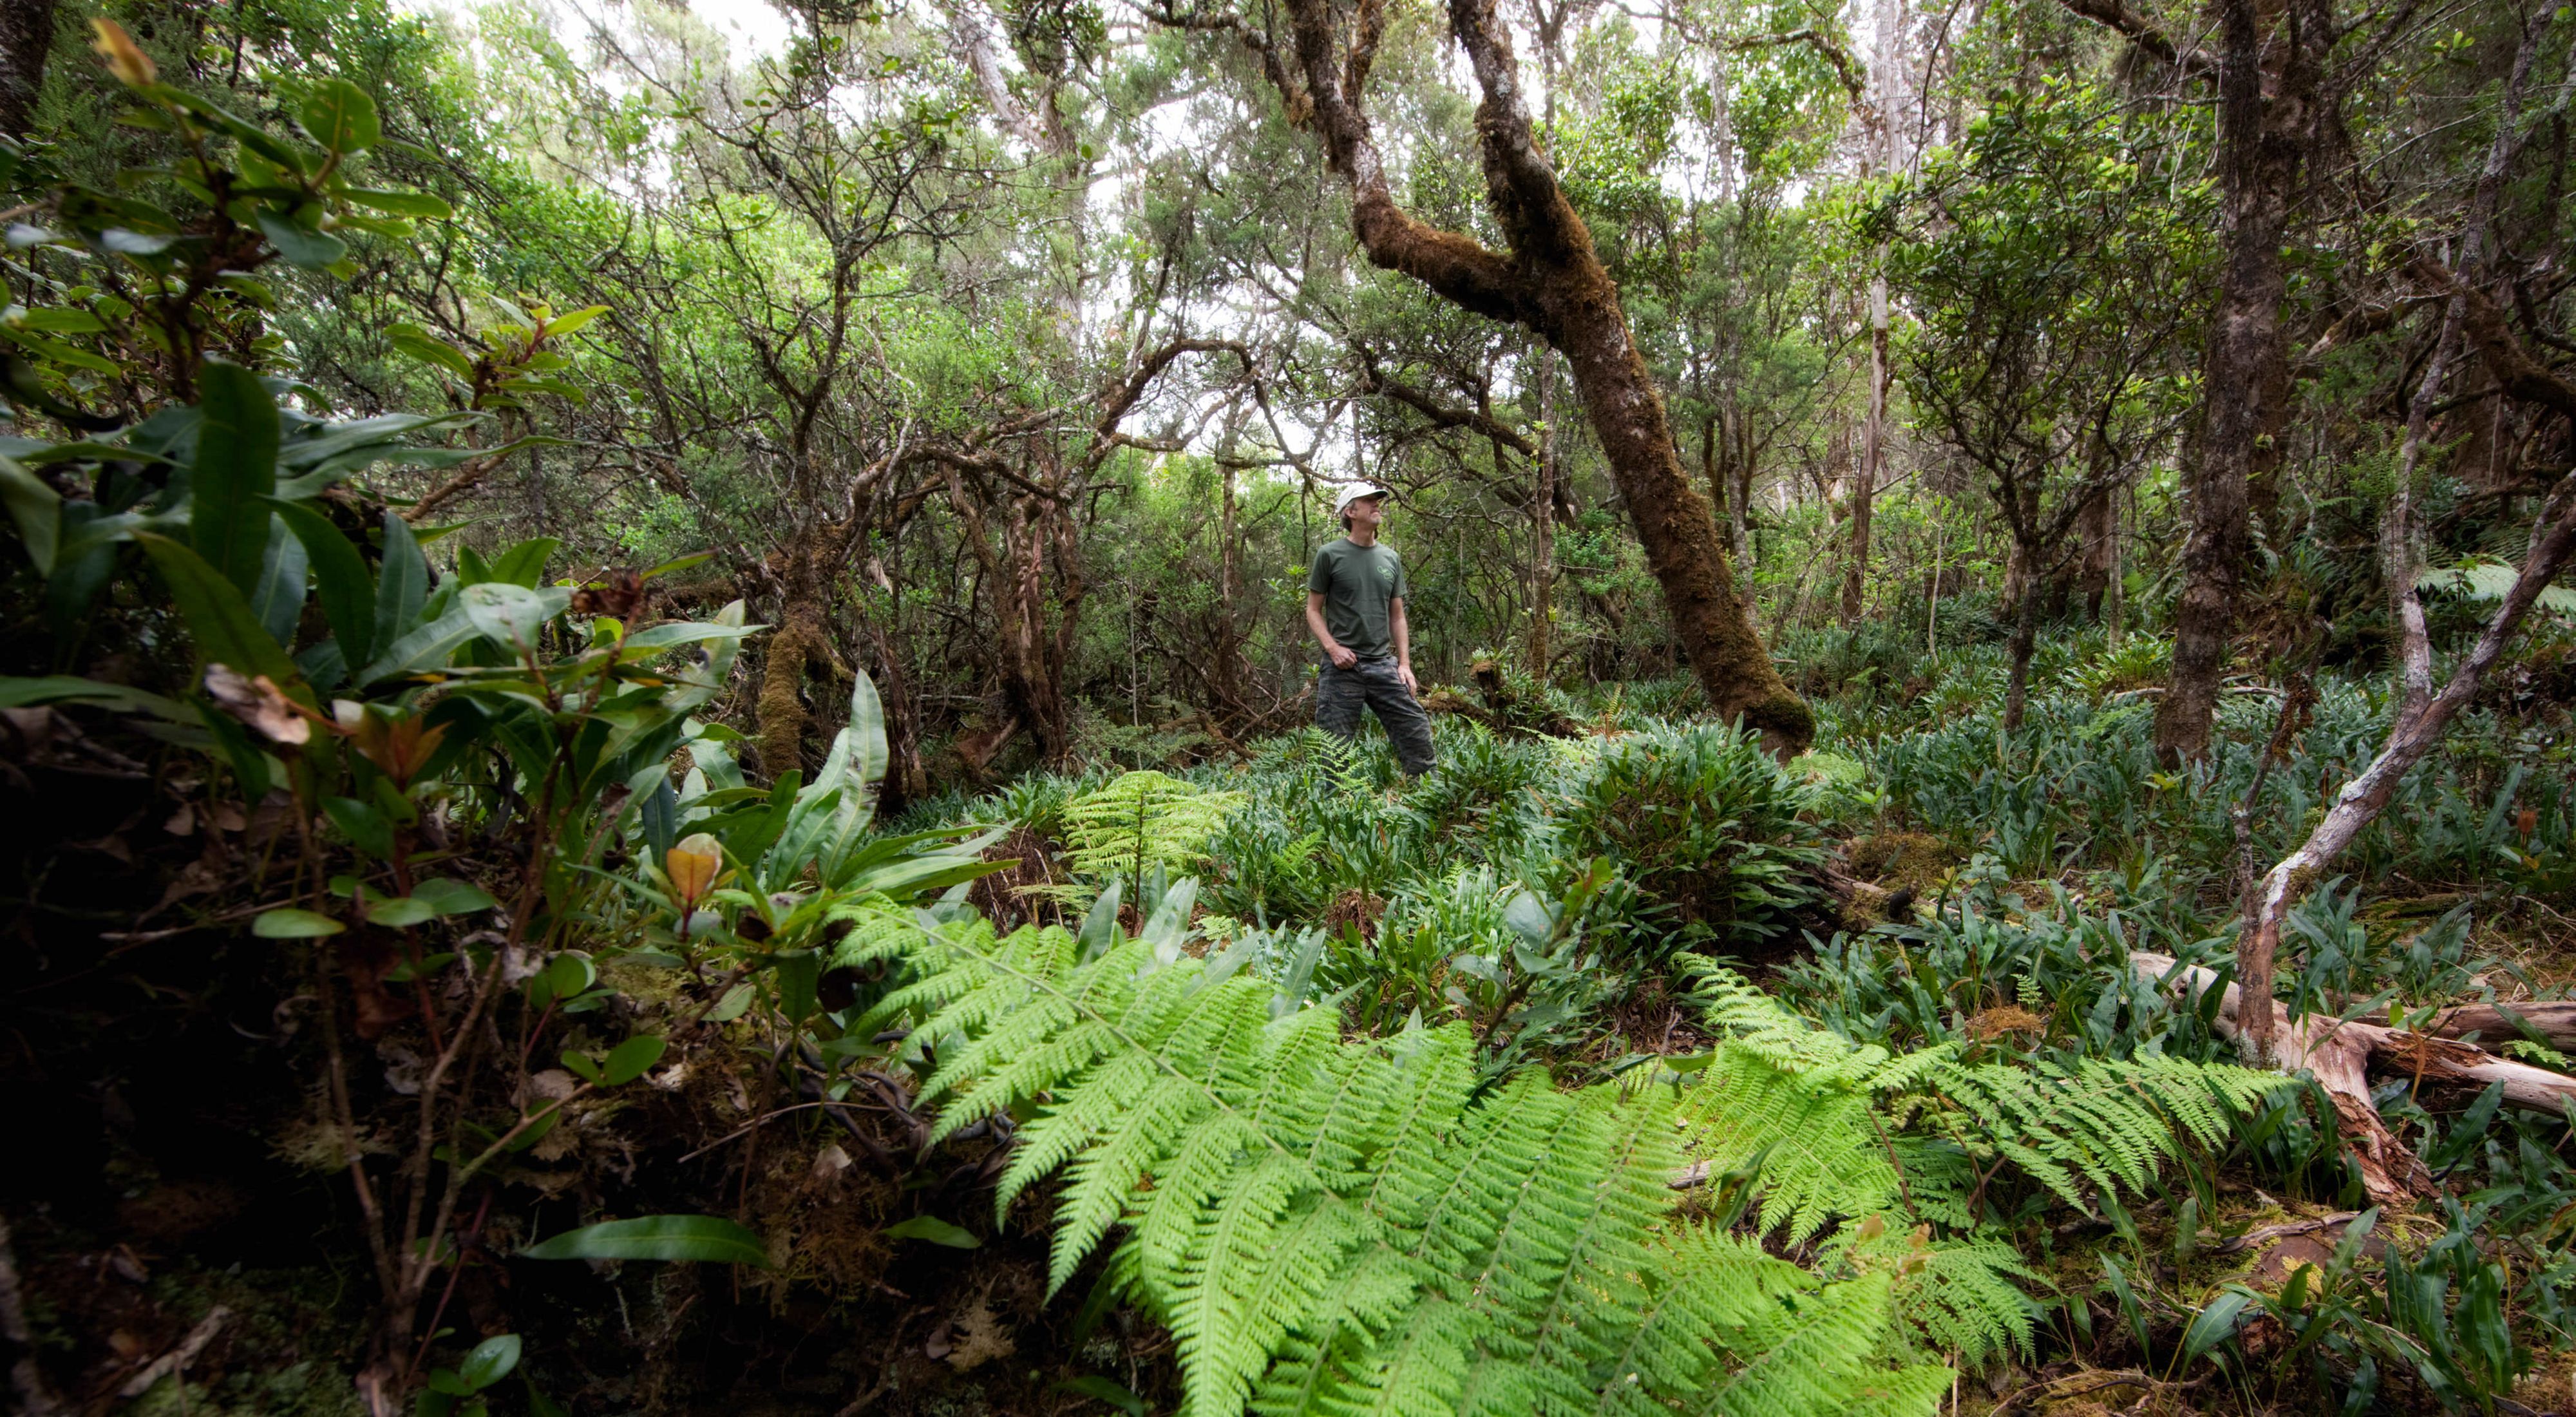 A man walks through dense forest undergrowth.